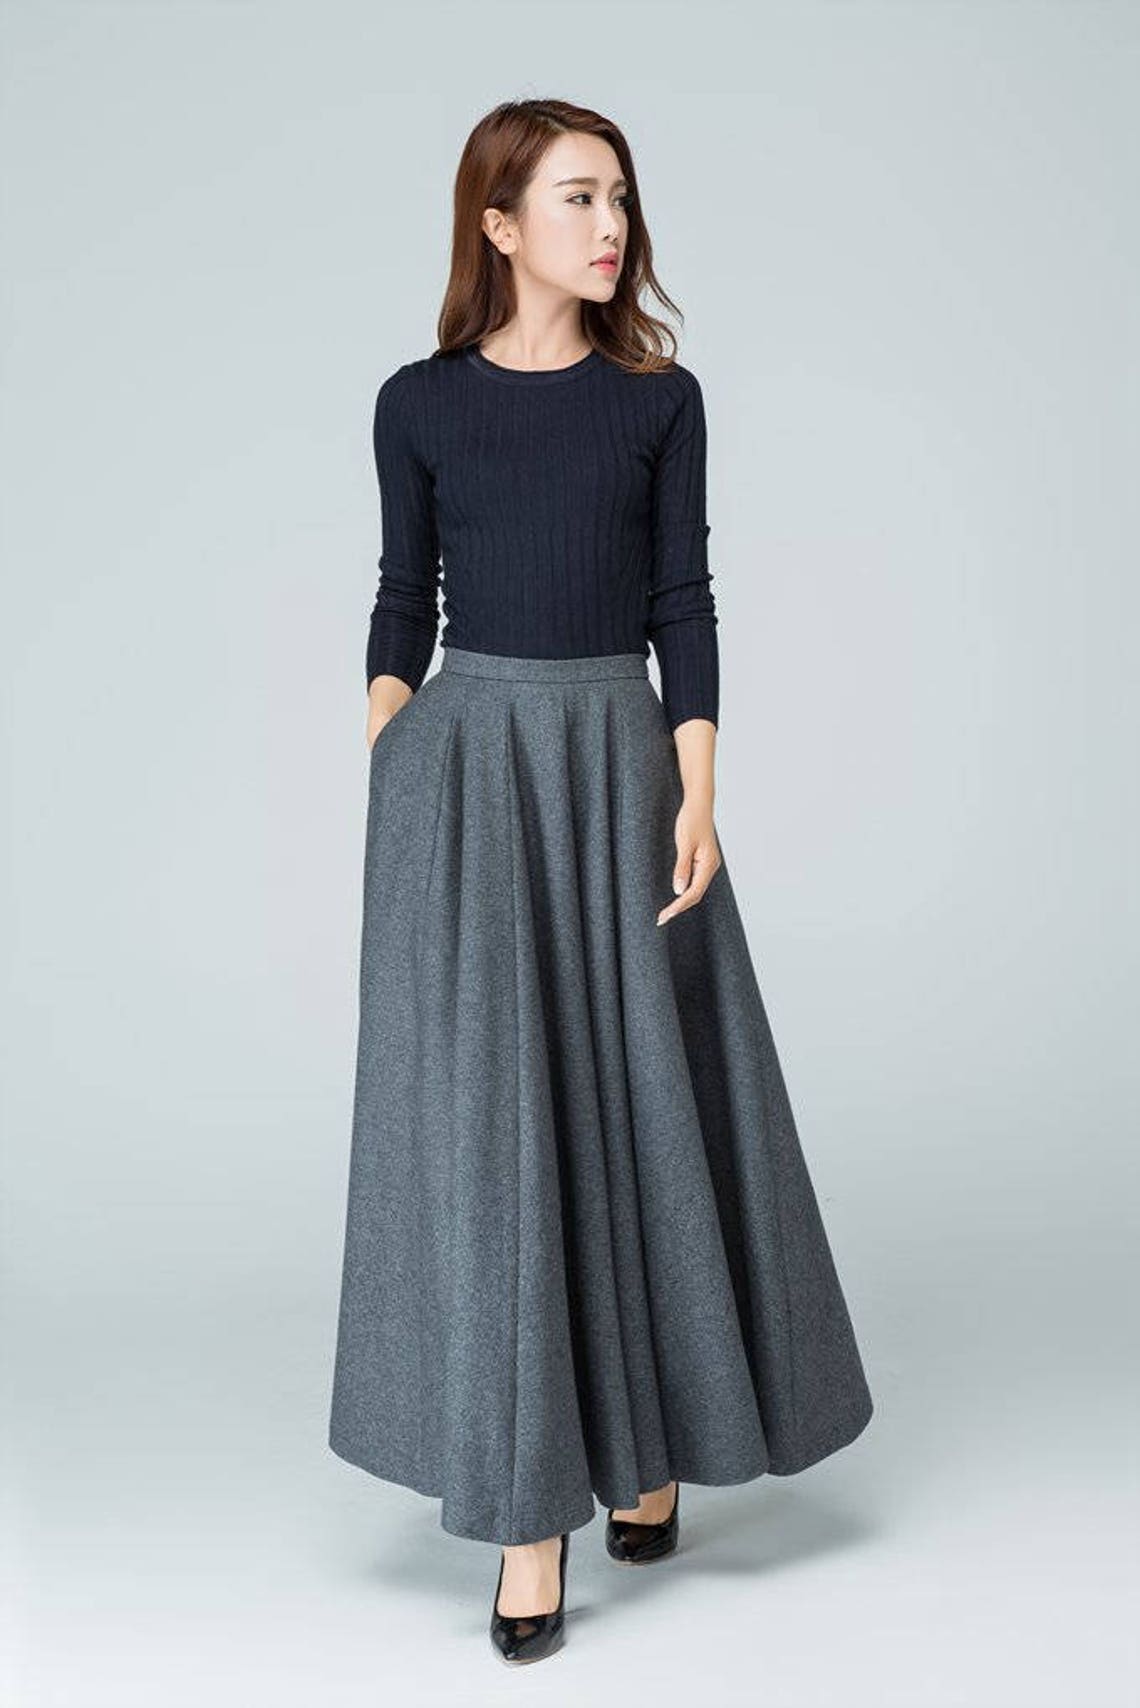 Maxi skirt pleated skirt winter skirt full skirt wool | Etsy